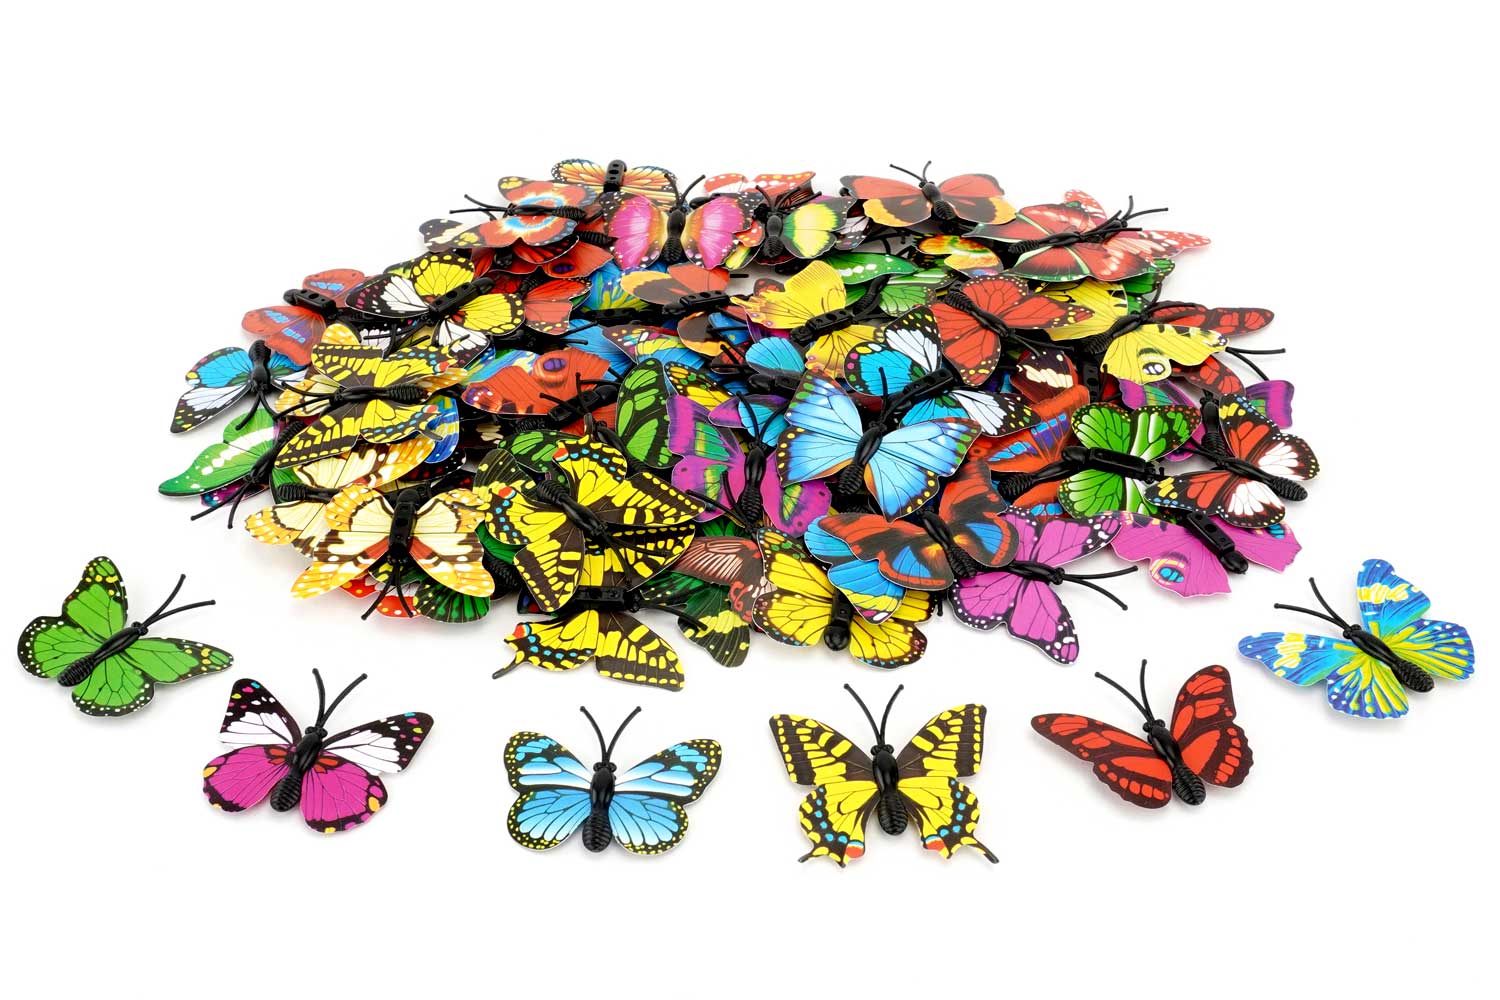 PAPILLONS RELIEF 3D - Stickers repositionnables papillons en relief 3D